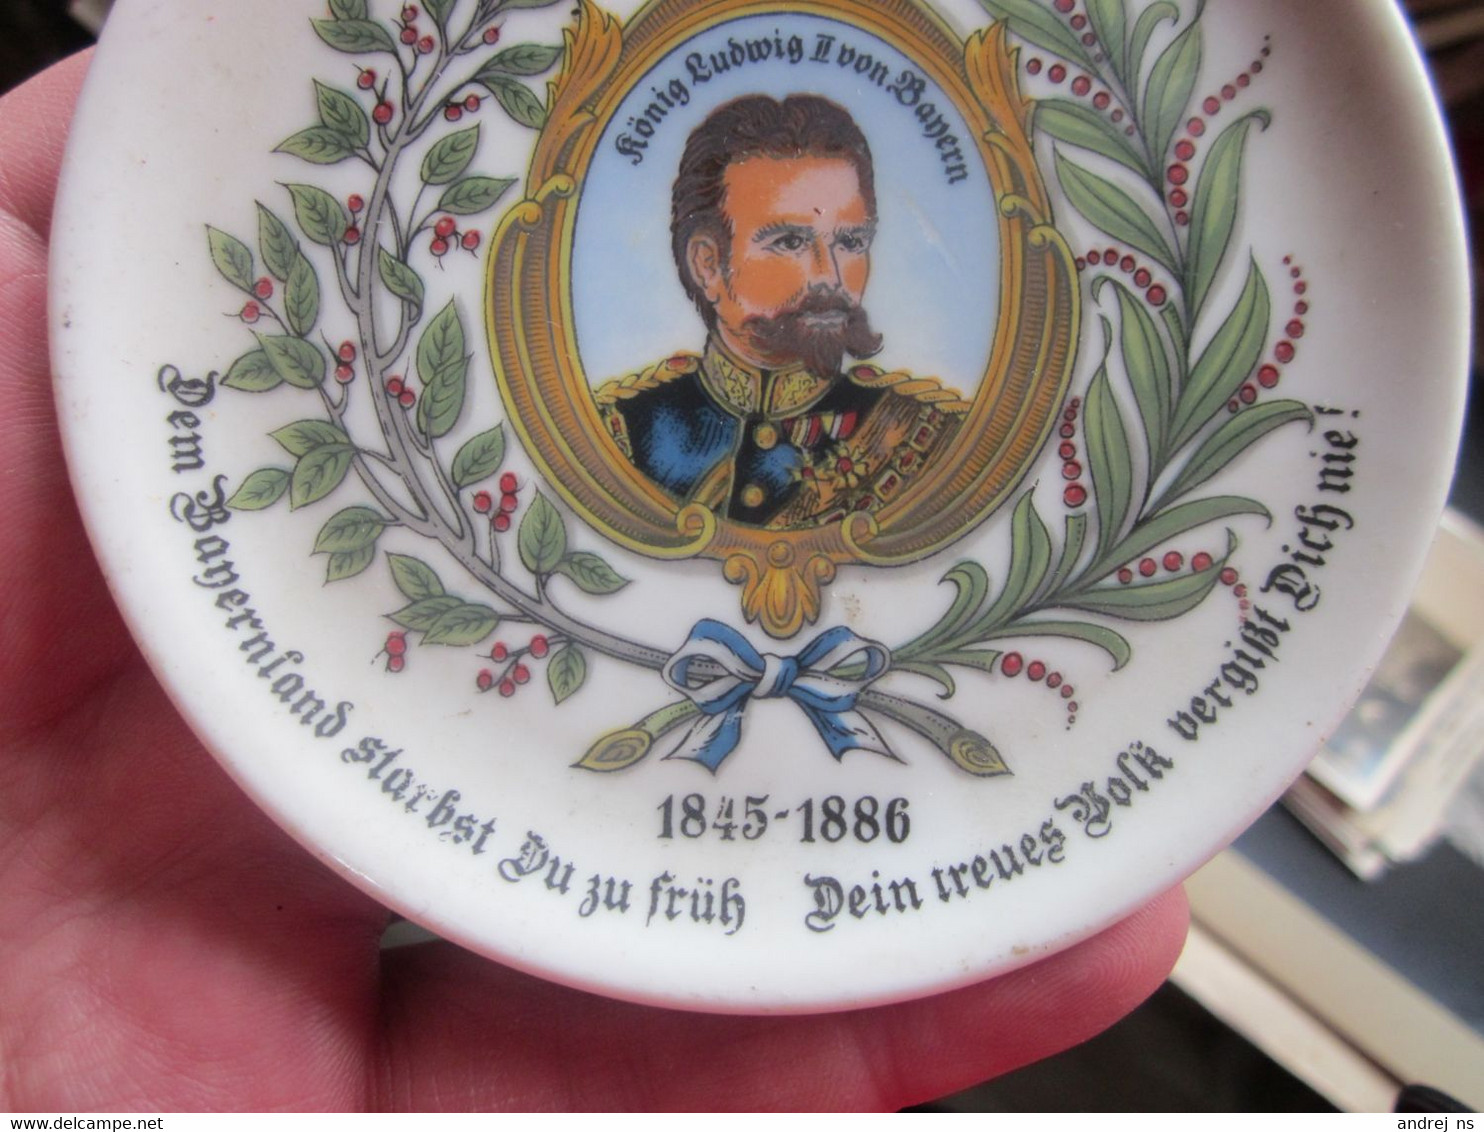 Old Decorative Plate Konigreich Bayern Konig Ludwig II Von Bayern 1845 1886 Diameter 10 Cm - Borden